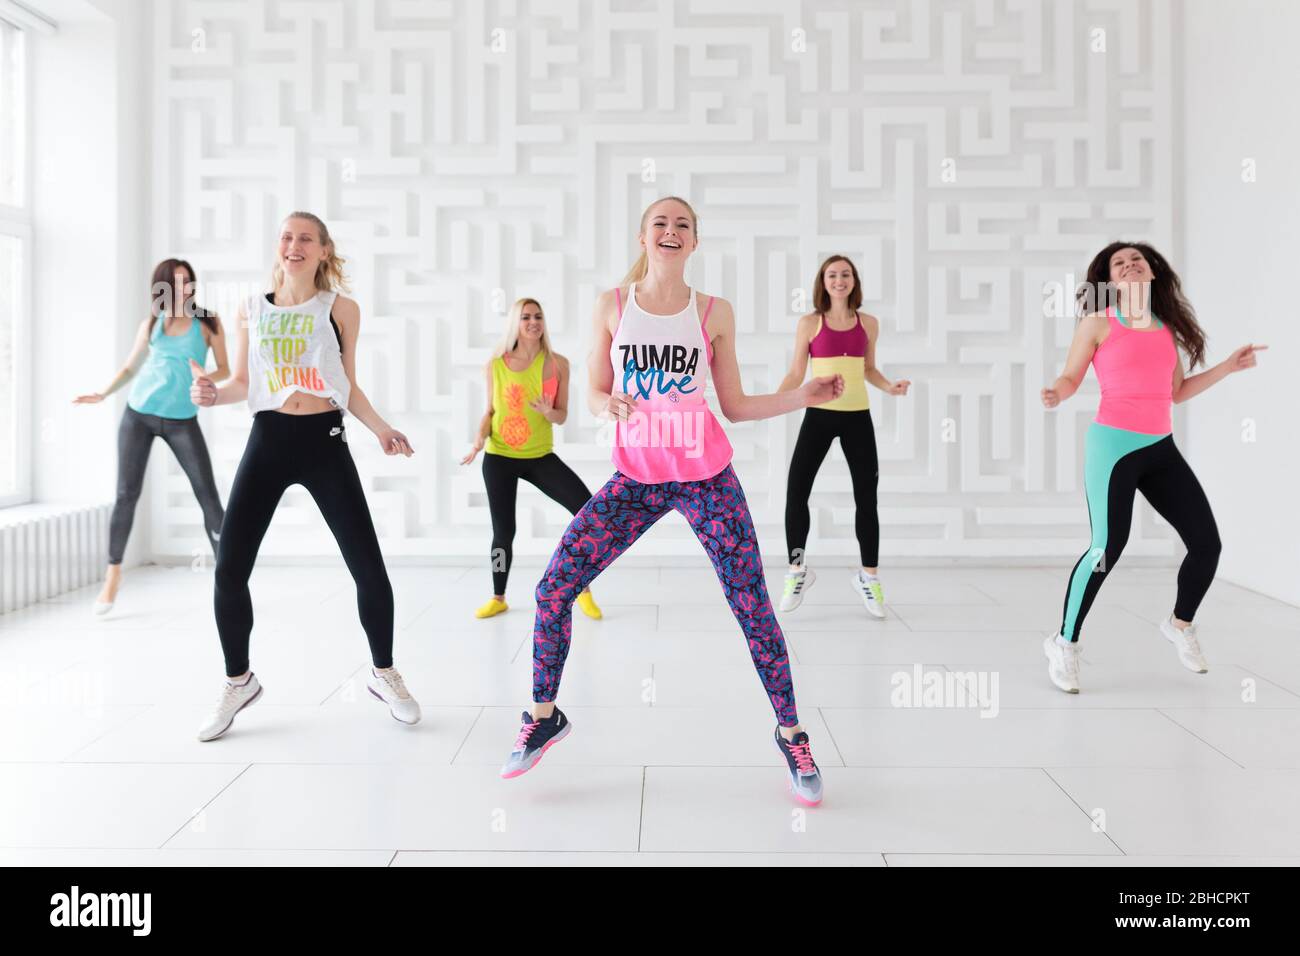 Groupe de jeunes femmes dans les vêtements de sport à la danse Zumba  fitness classe Photo Stock - Alamy